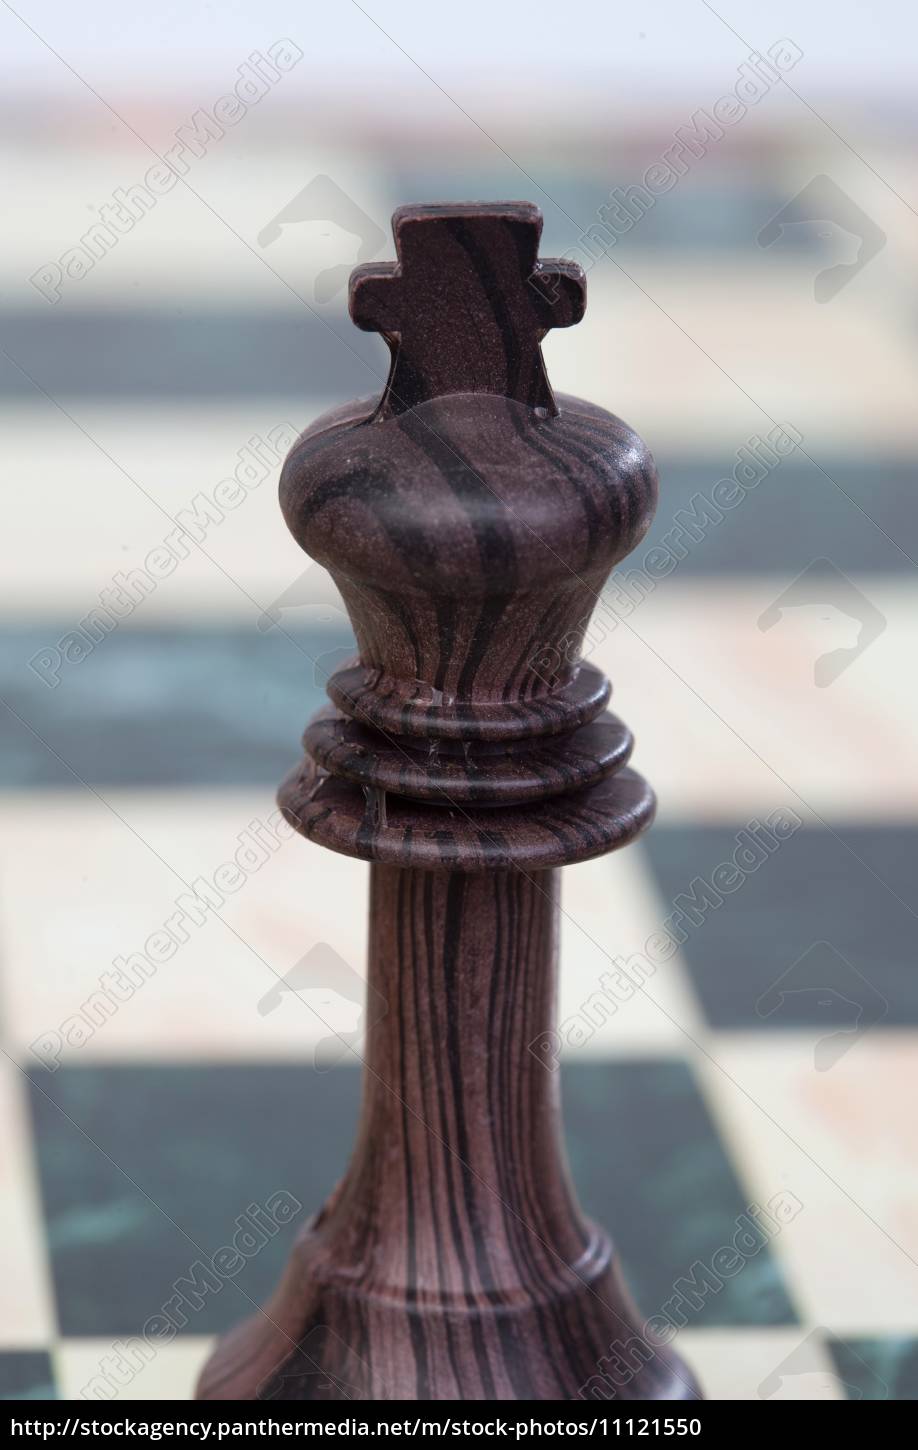 Rei do xadrez - ícones de esportes grátis